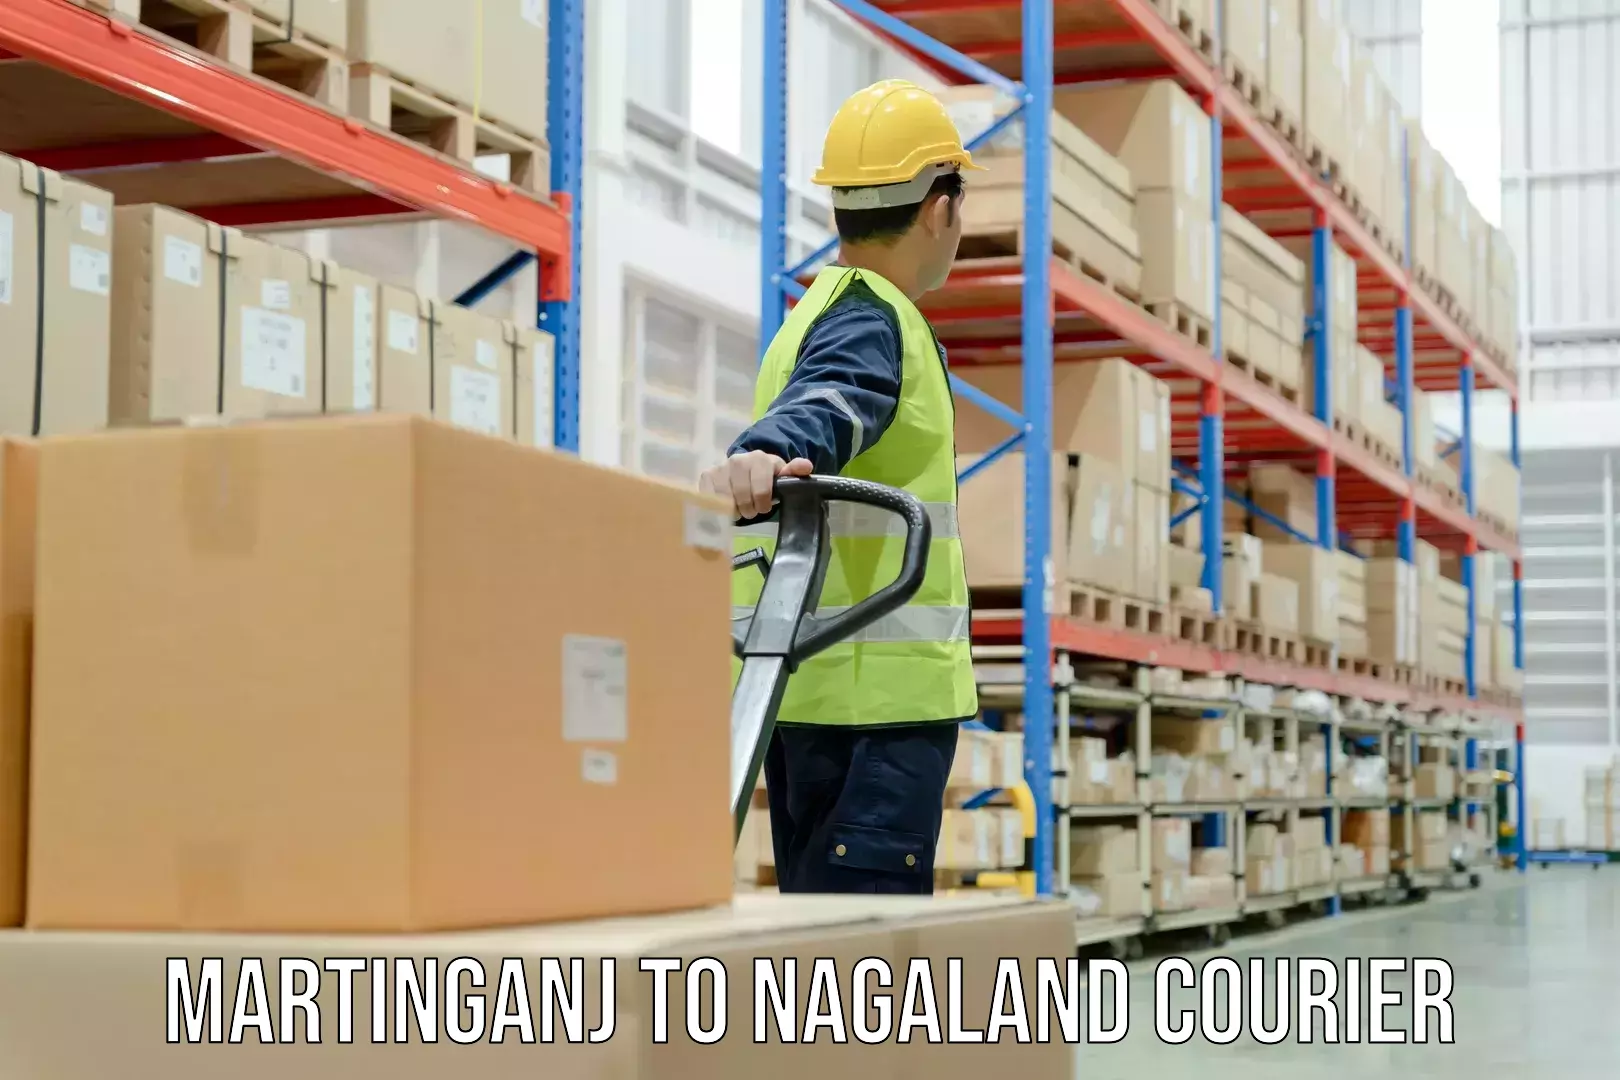 Parcel service for businesses Martinganj to NIT Nagaland